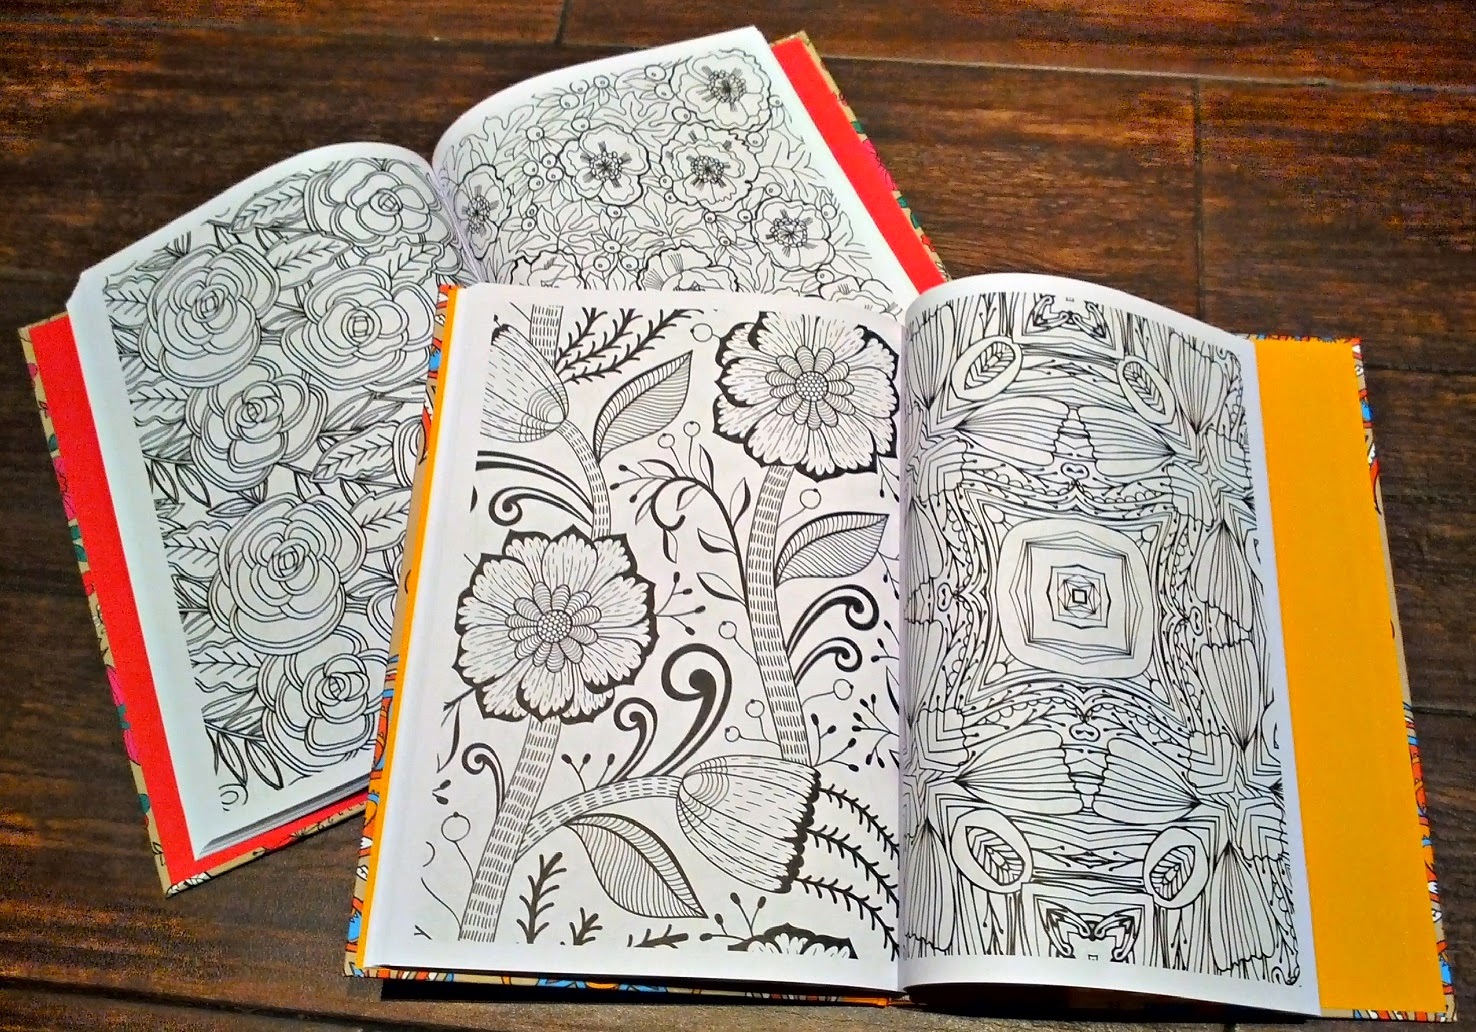 Mandala Para Colorear: cuaderno colorear adultos y niños mandala  zentangle/cuadernos dibujo mandala/cuadernos de pintar mandalas flores  (Paperback)